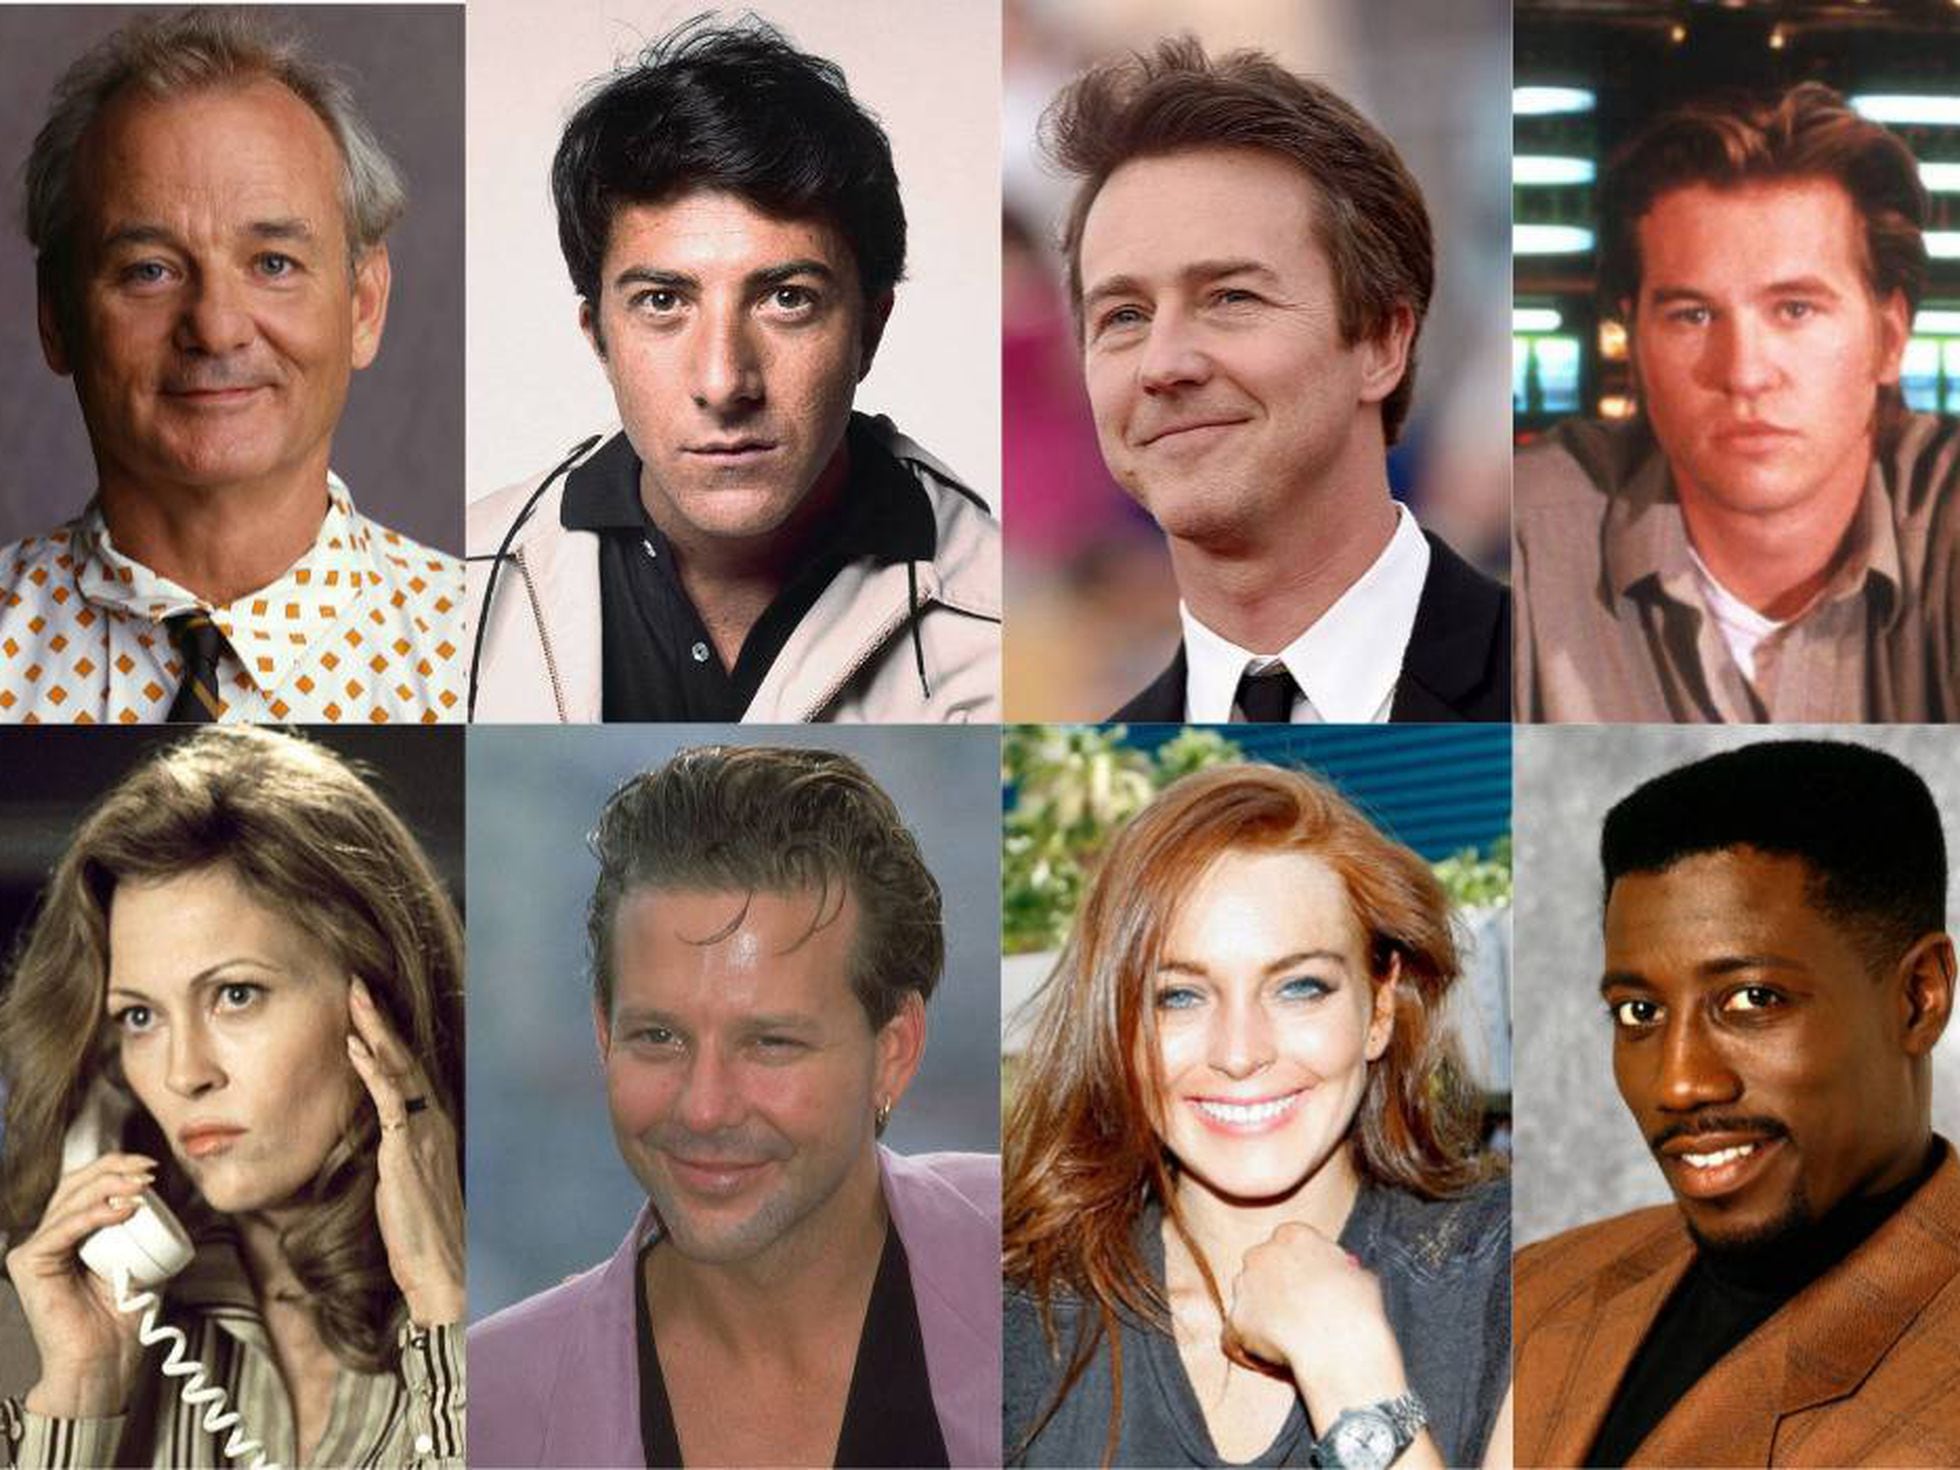 Por qué ya casi nadie en Hollywood quiere trabajar con estos actores? |  ICON | EL PAÍS